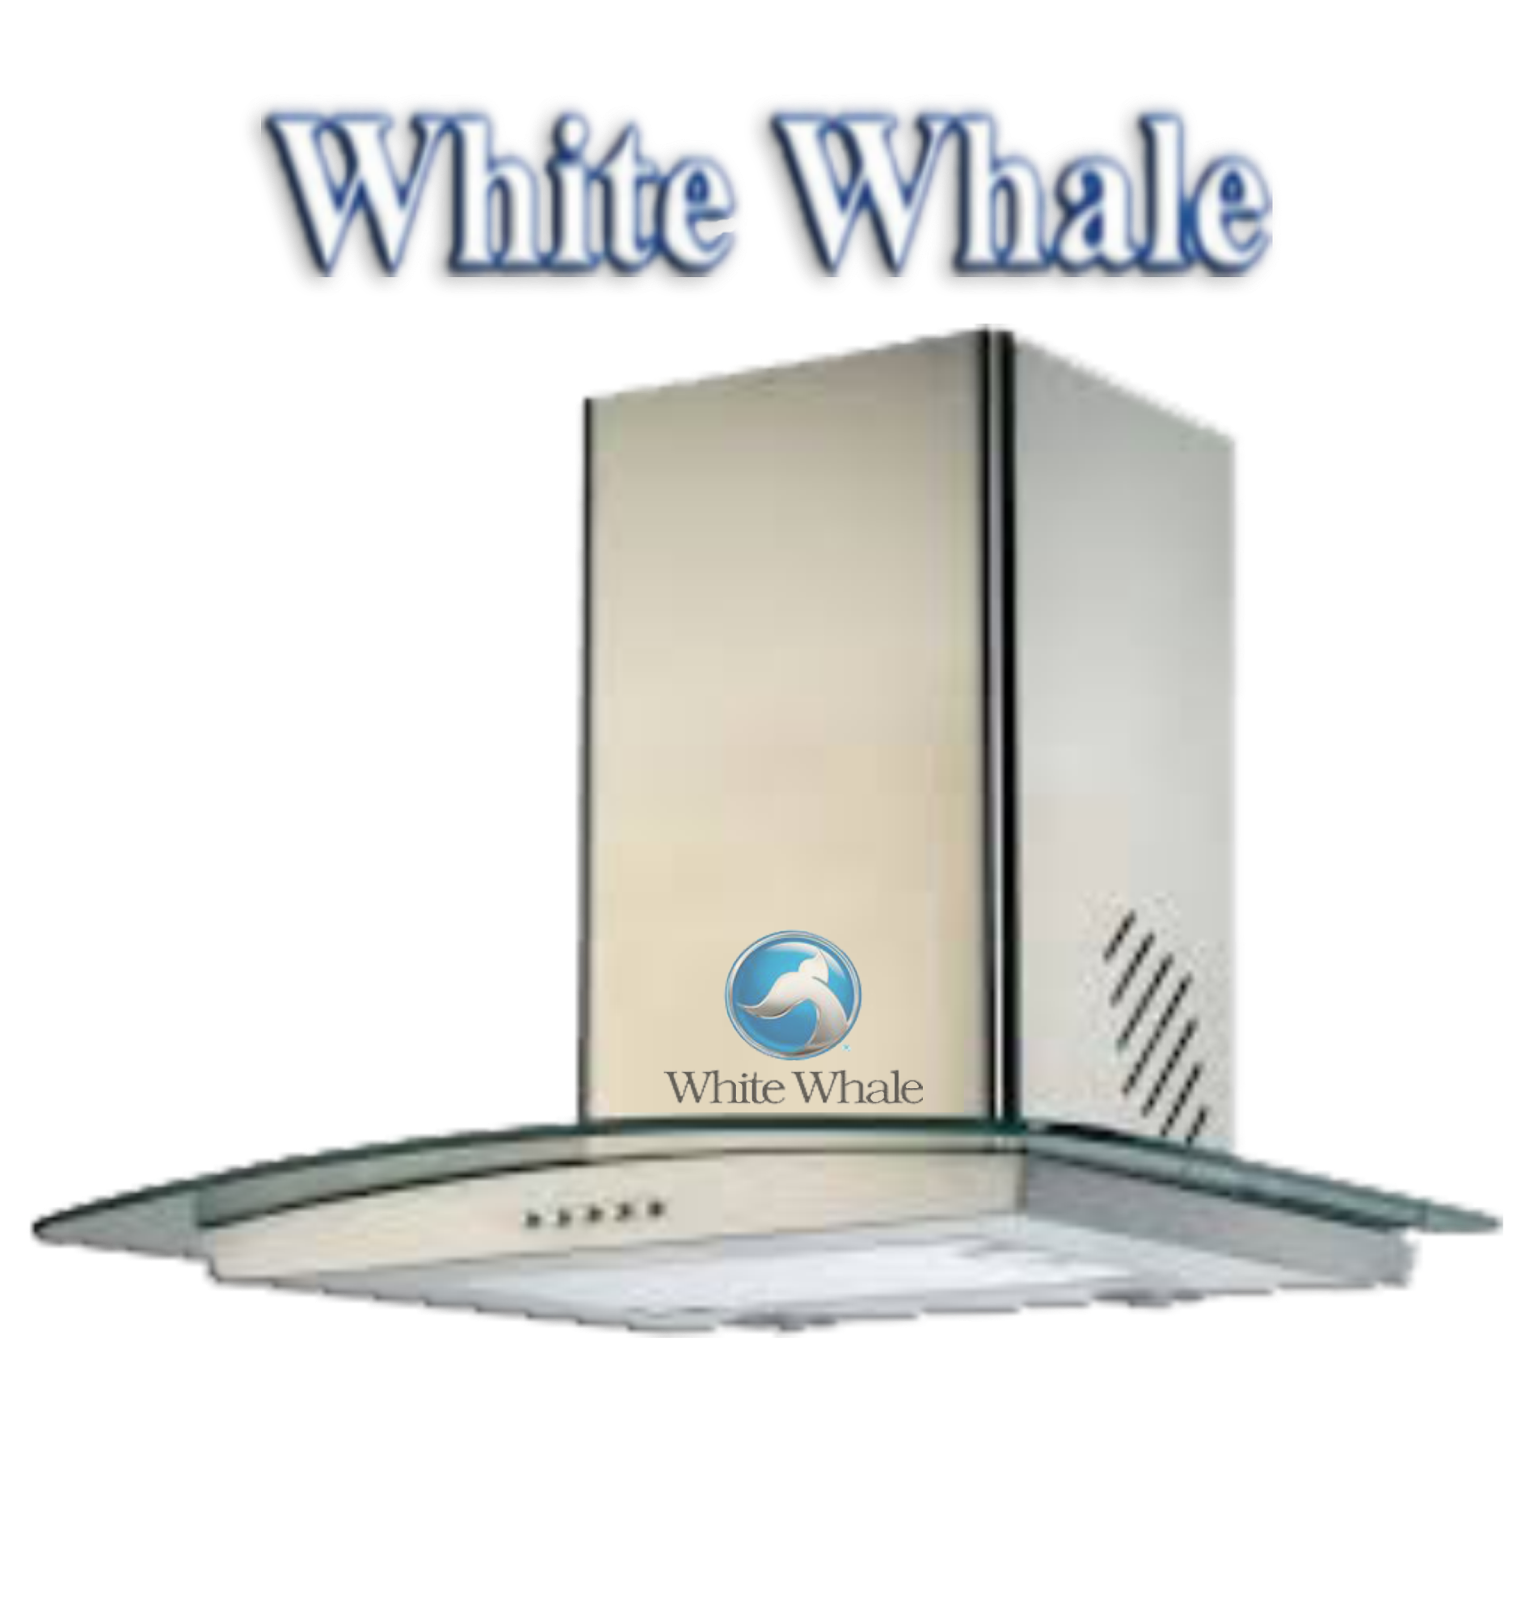 توكيل صيانة شركة شفاط وايت ويل whitwe whale